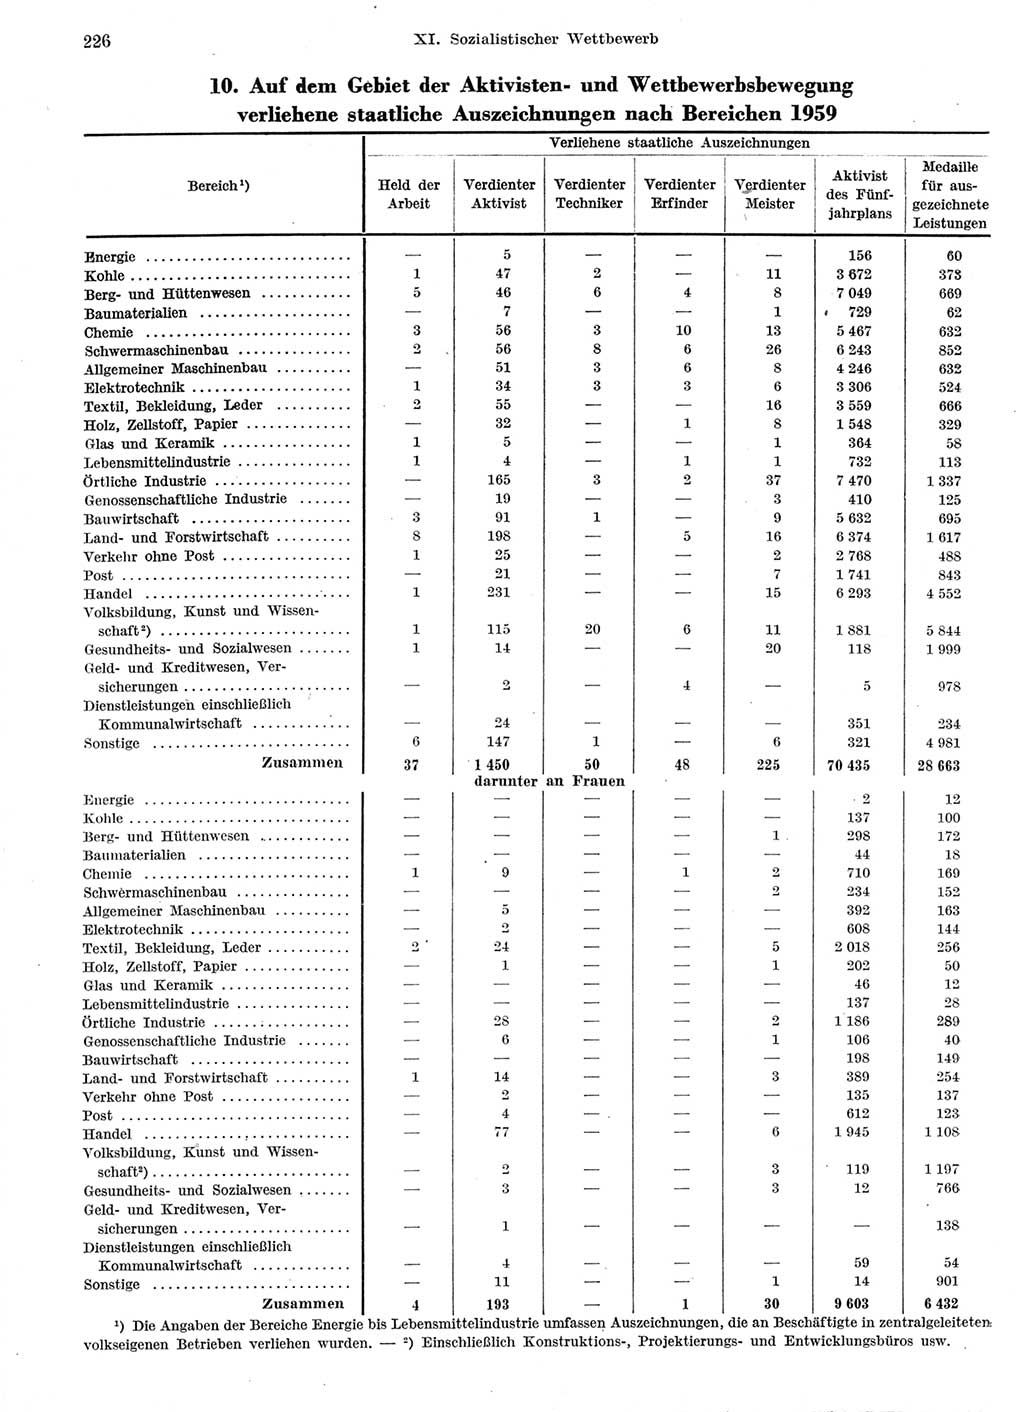 Statistisches Jahrbuch der Deutschen Demokratischen Republik (DDR) 1959, Seite 226 (Stat. Jb. DDR 1959, S. 226)